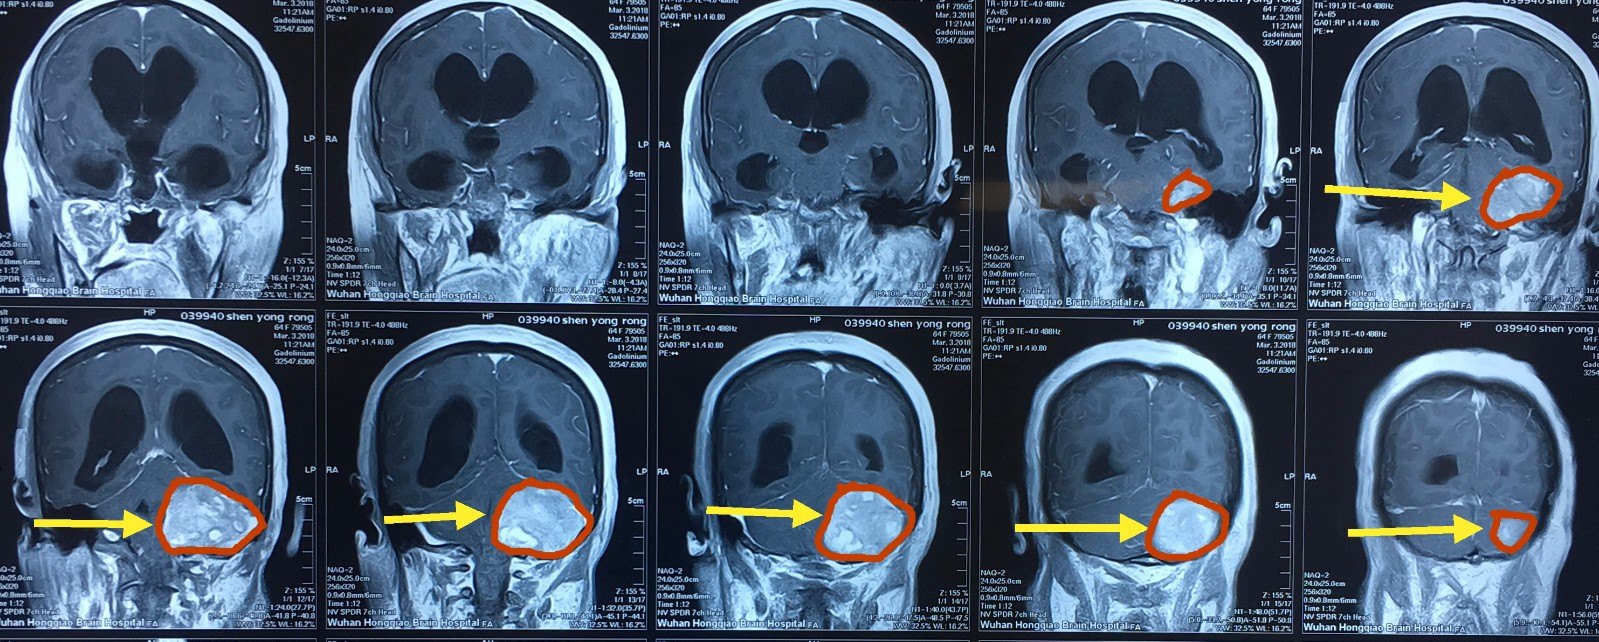 核磁共振平扫及增强,显示左侧小脑半球巨大肿瘤,边界清楚,均匀强化